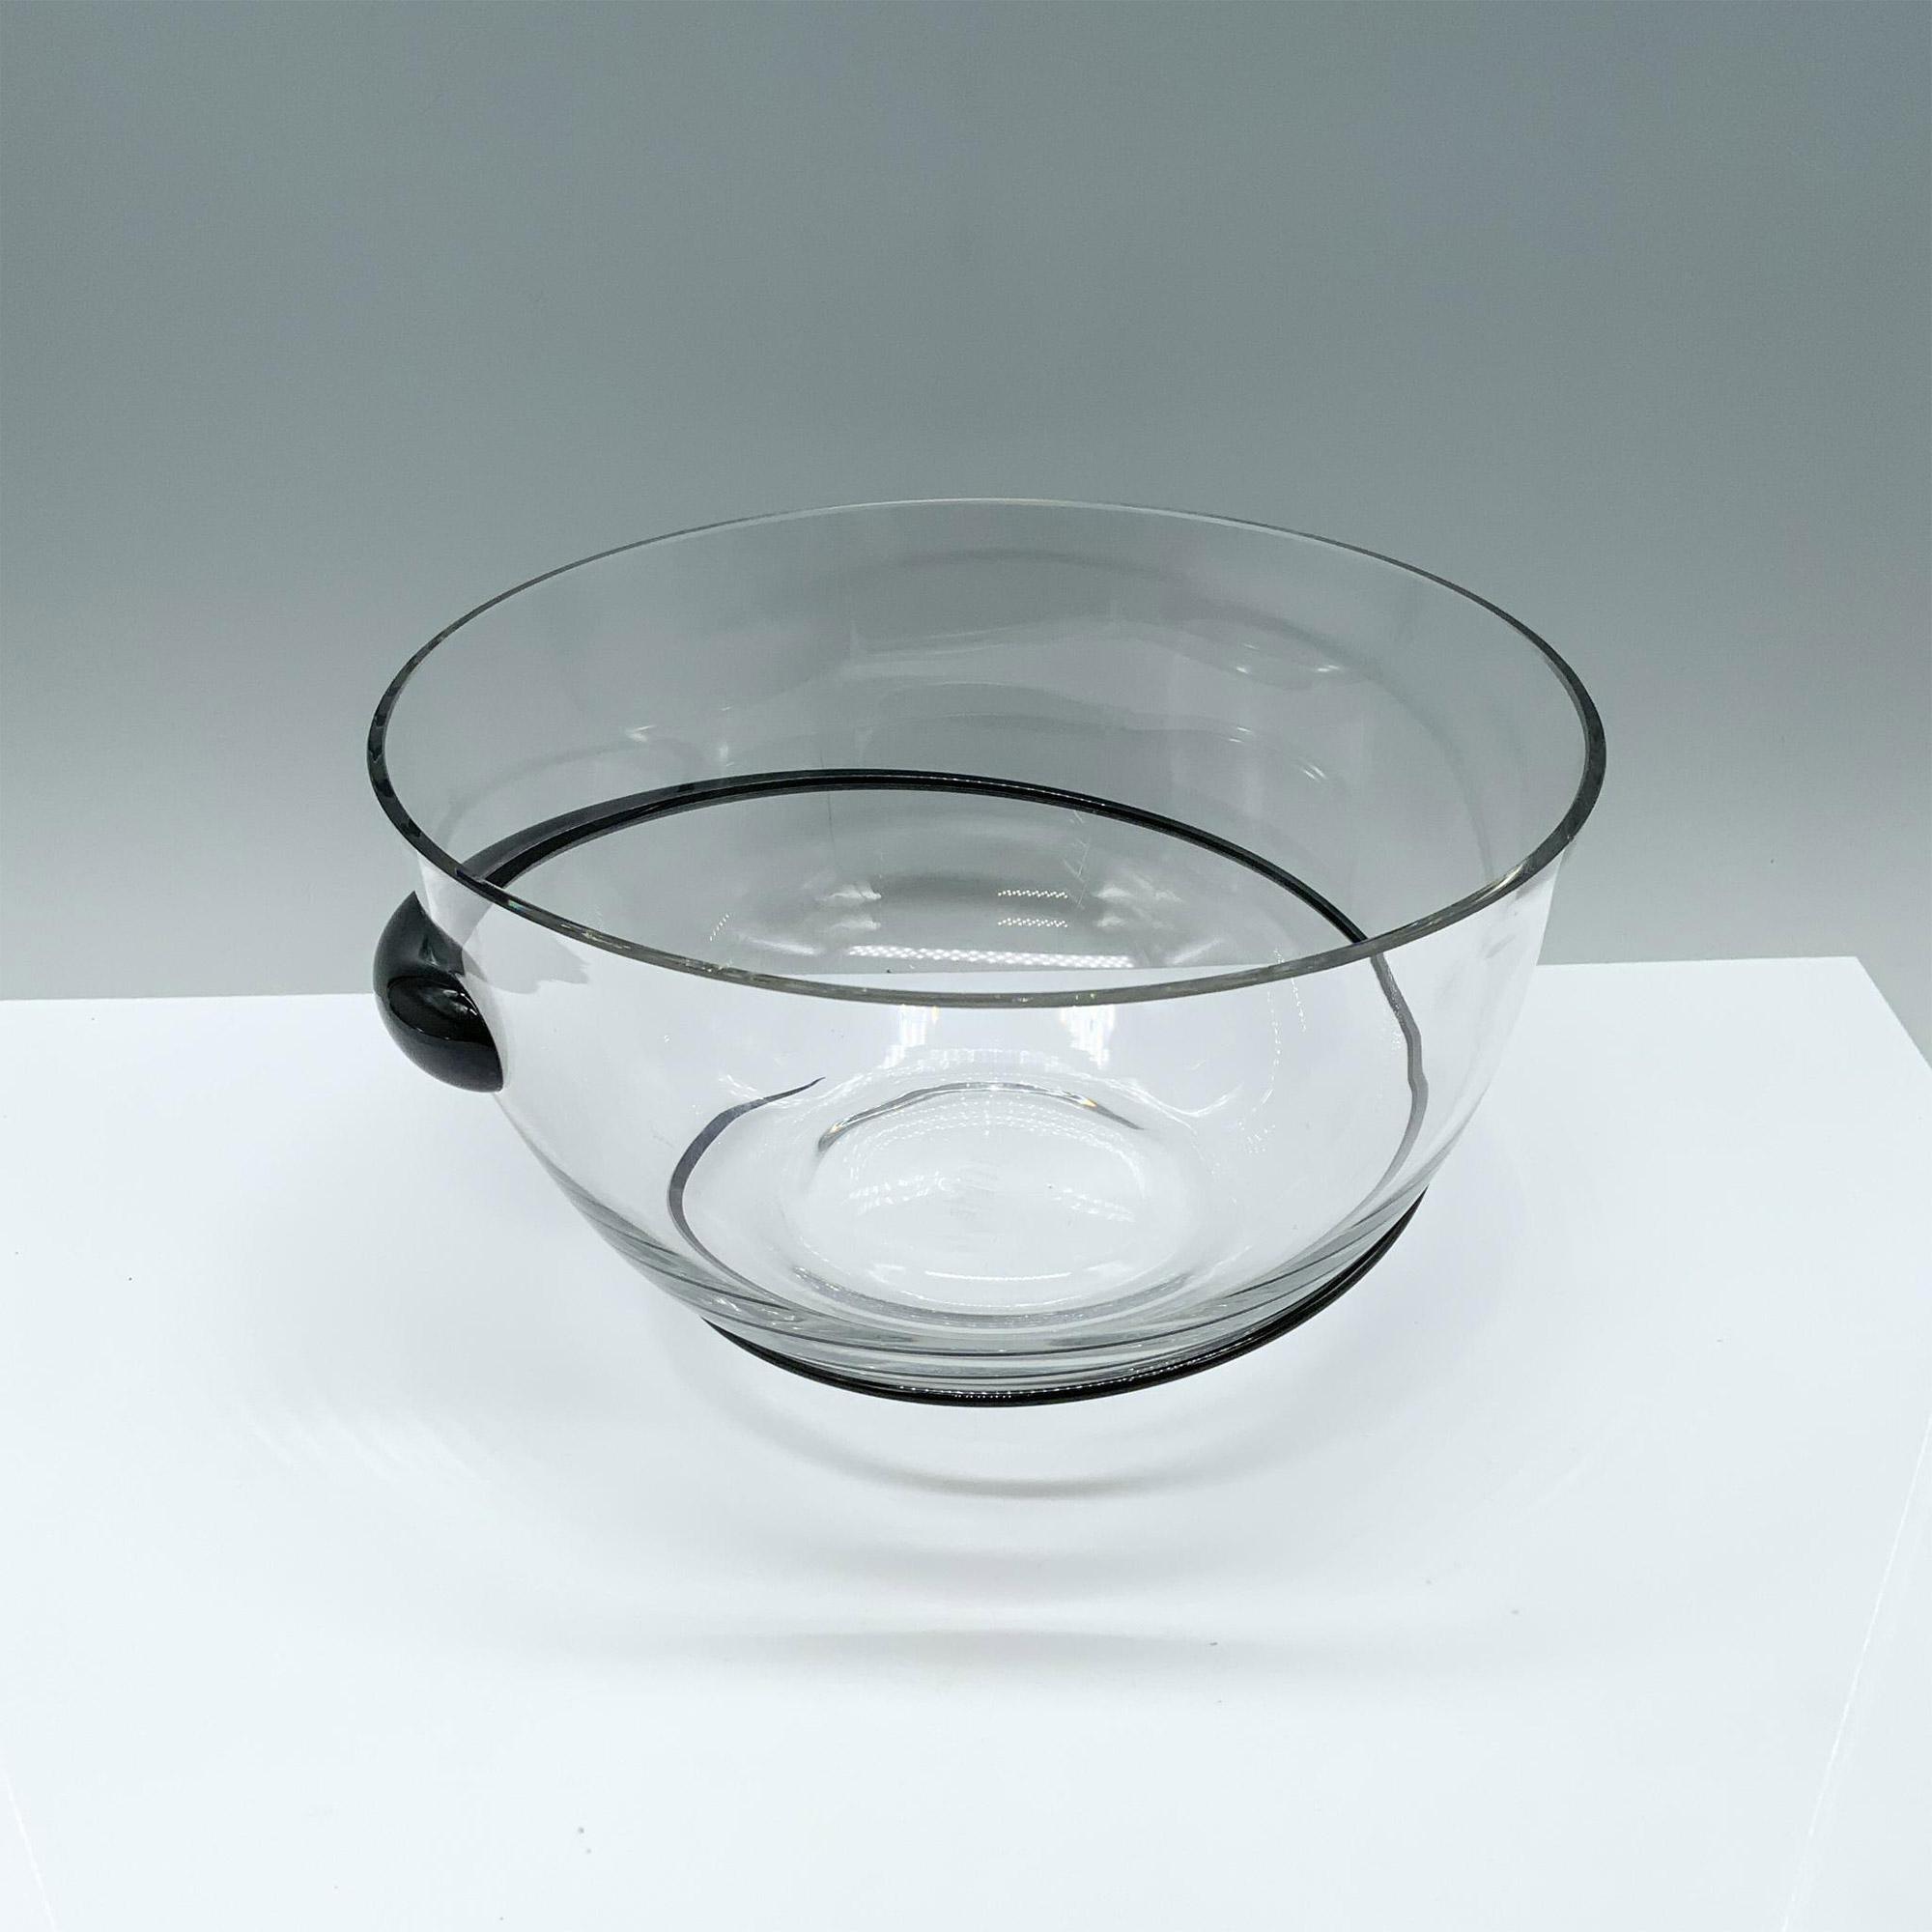 Rosenthal Modernist Art Glass Bowl - Image 2 of 3